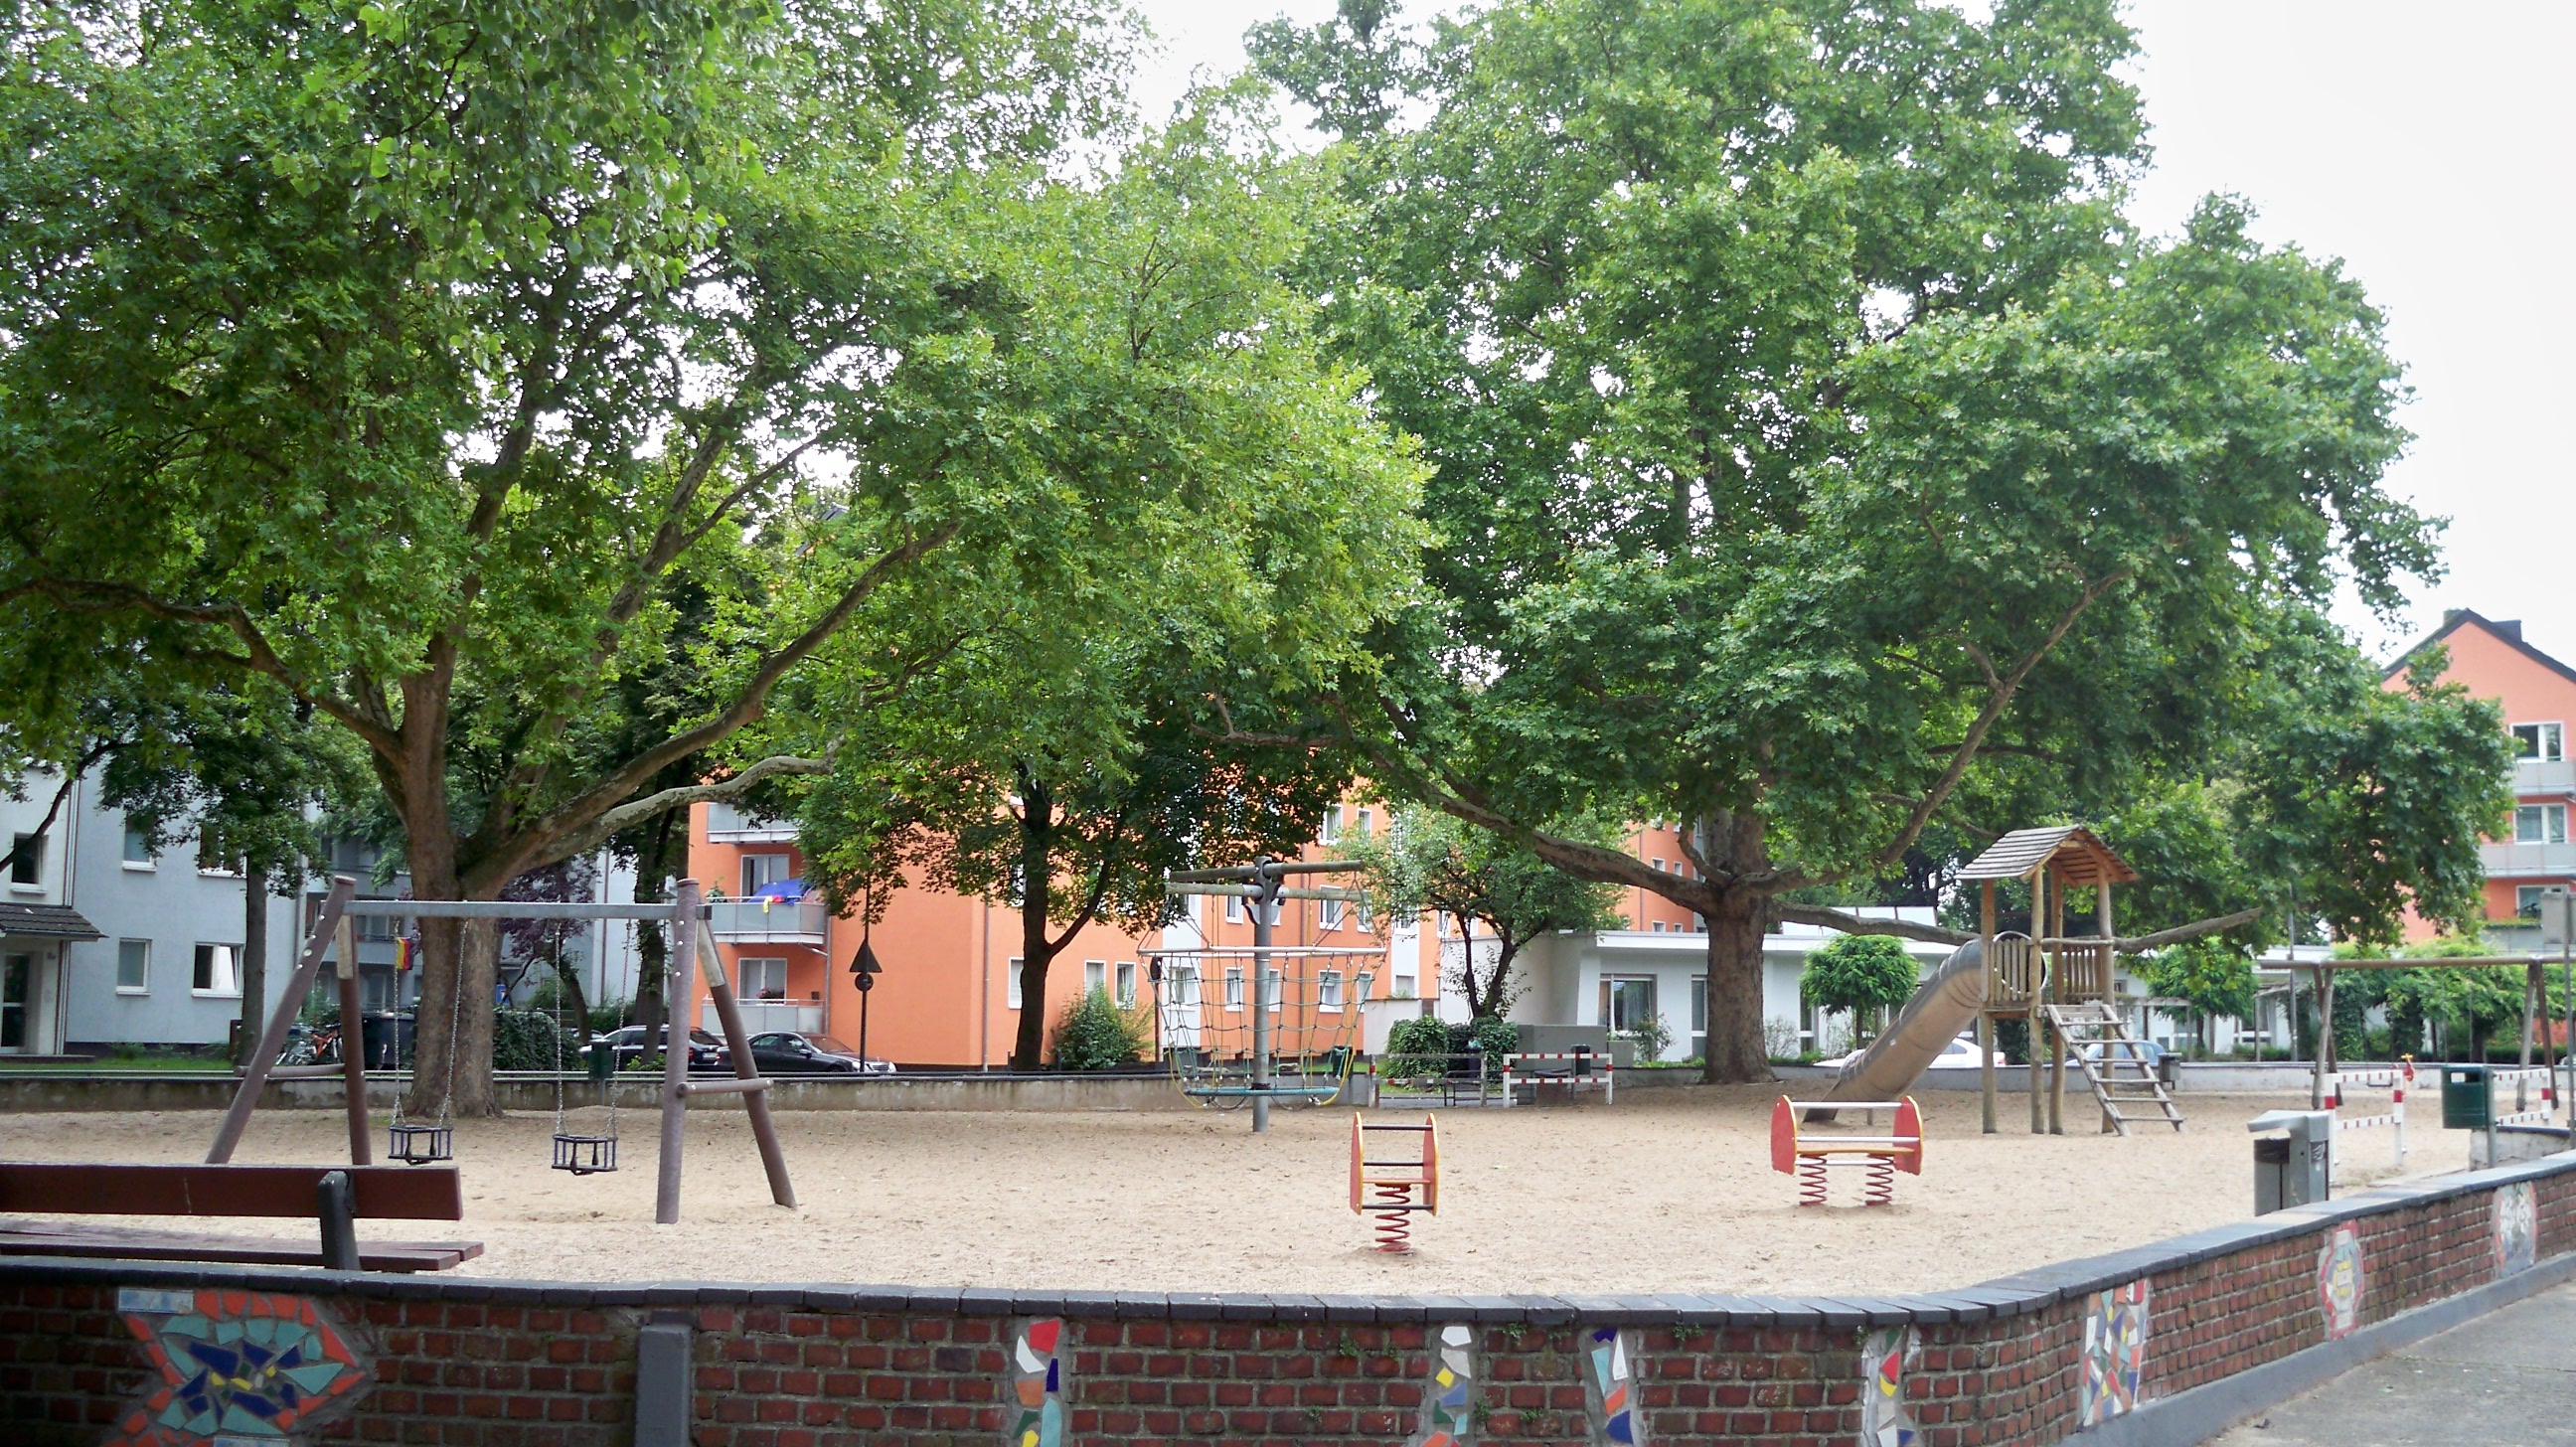 Spielplatz an der Brauerstraße in Köln © Landsblog NRW